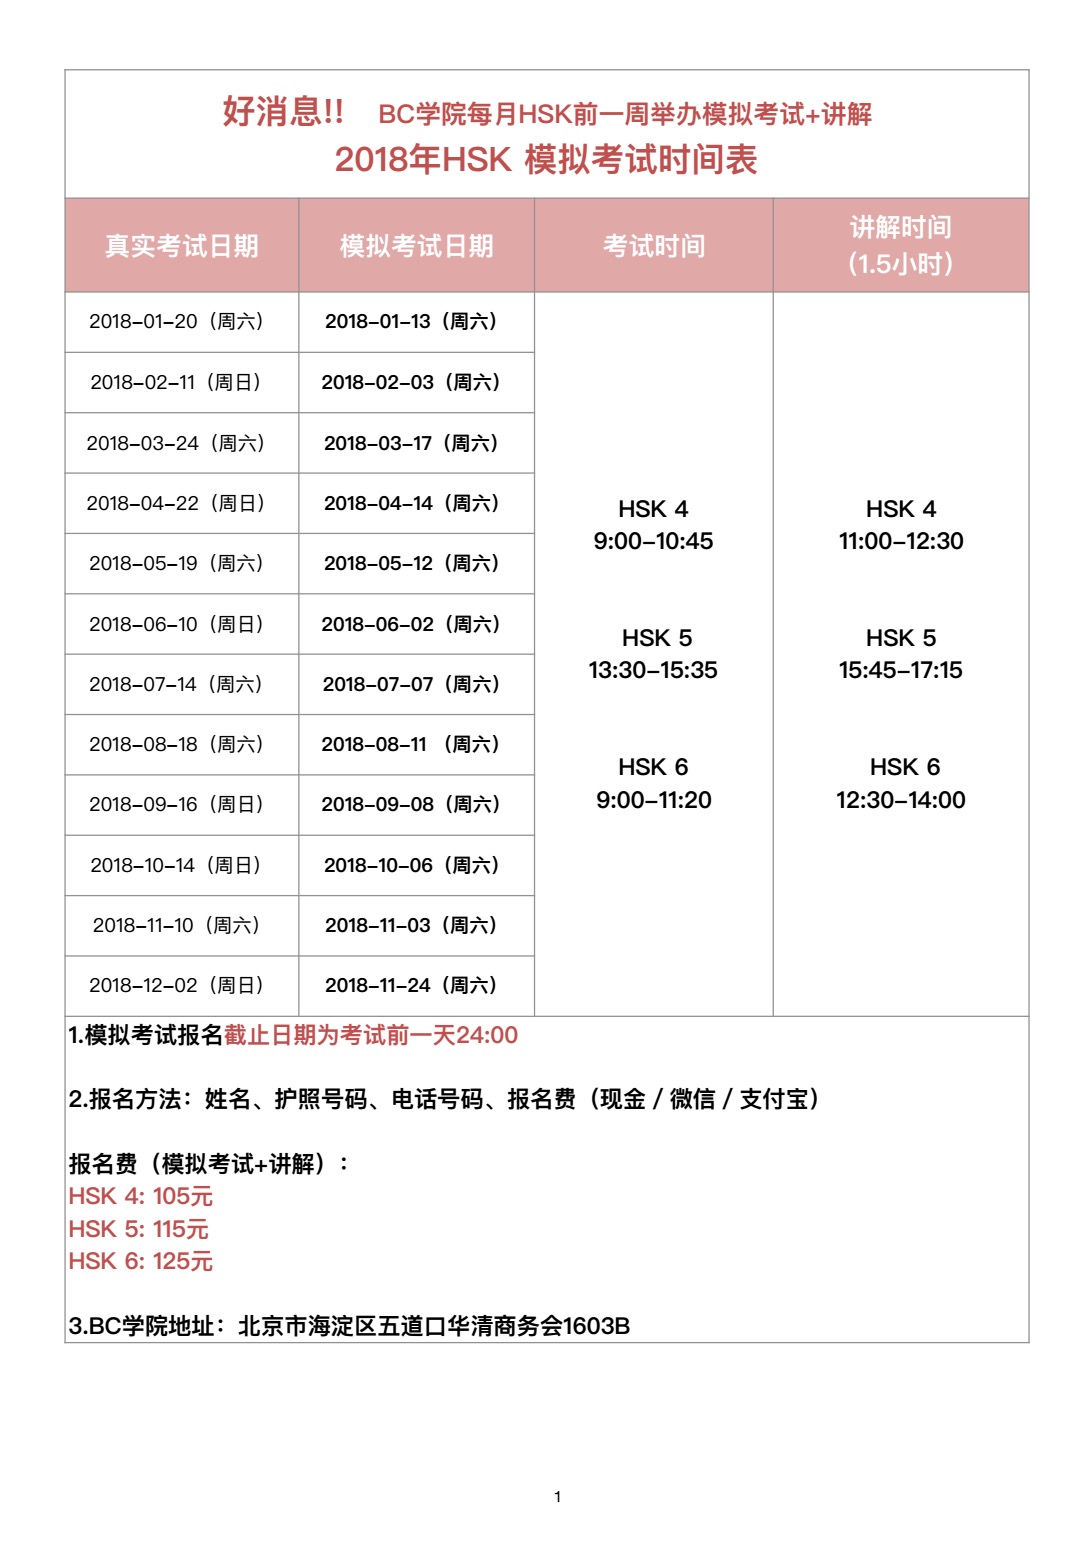 2018年HSK模拟考试时间表(汉语).png